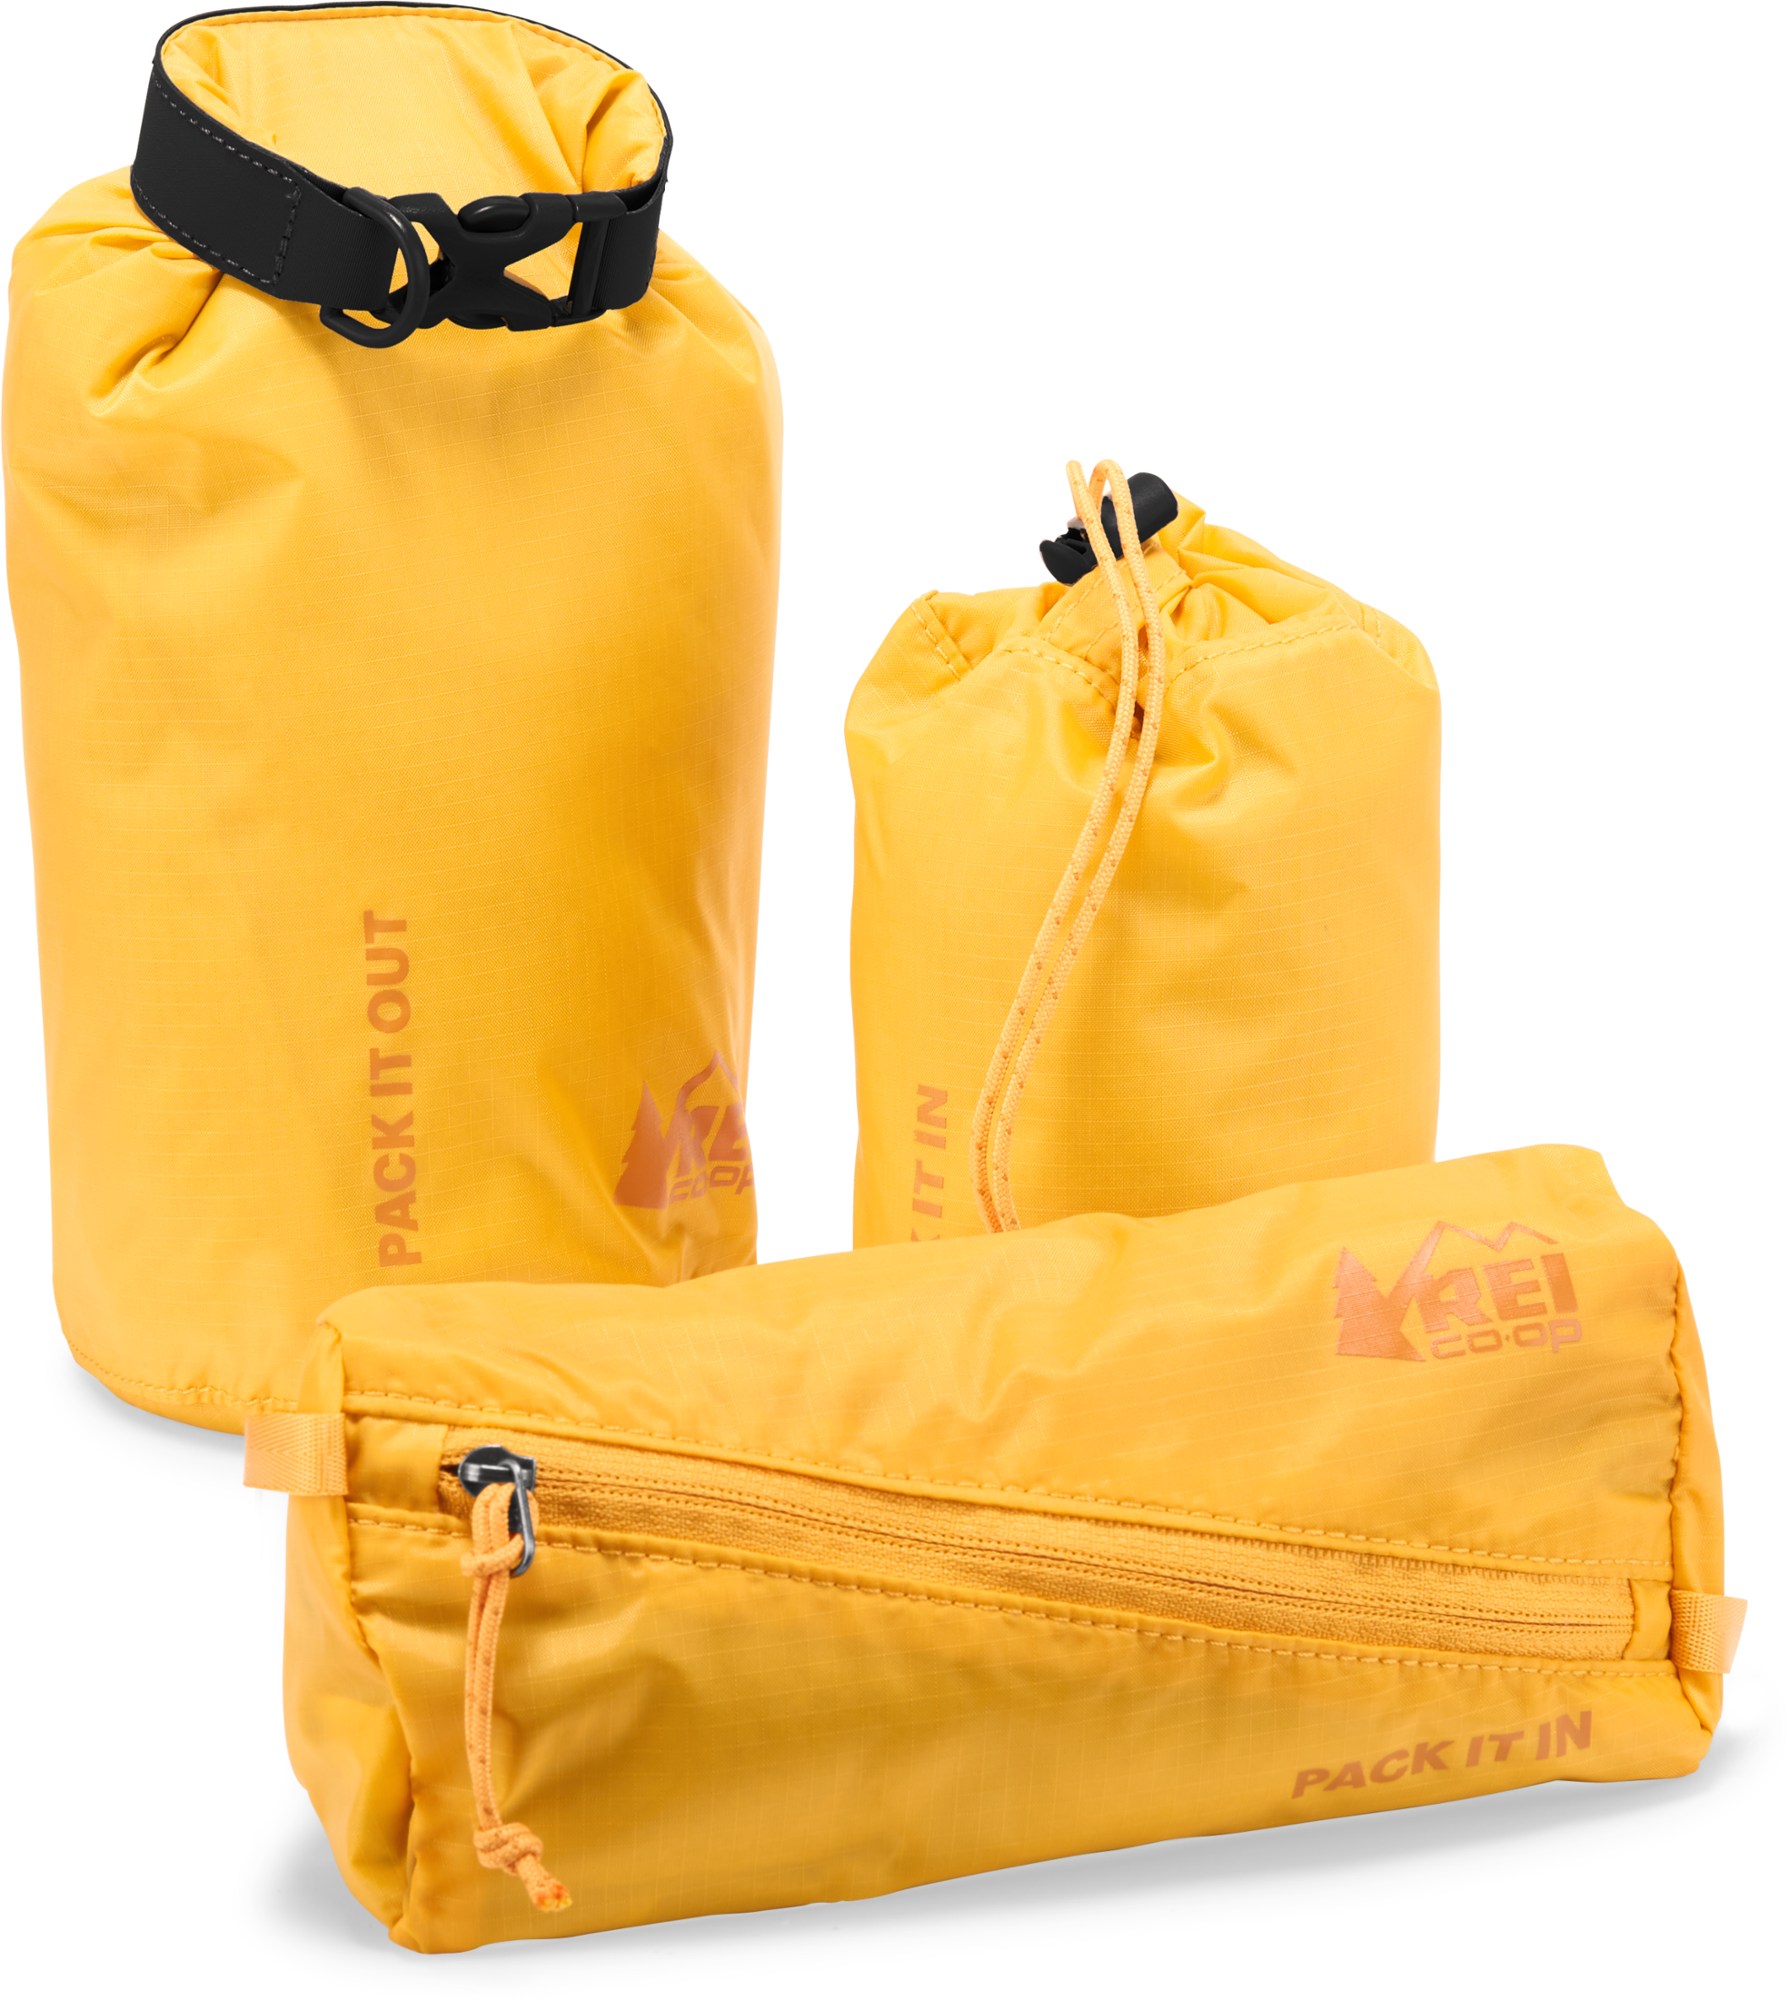 Пакеты Pack In Pack Out — набор из 3 шт. REI Co-op, желтый